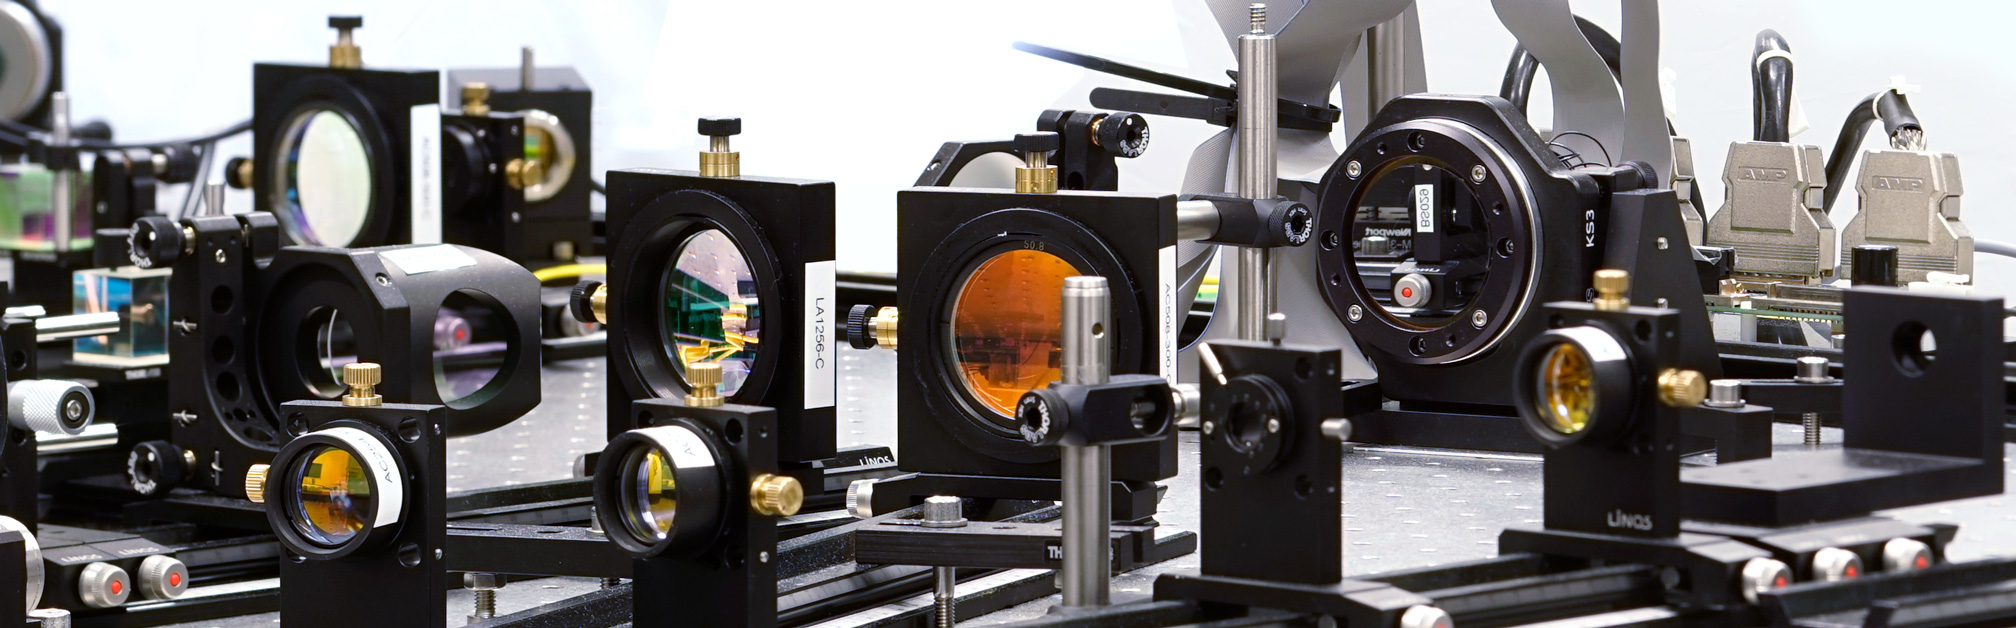 Laboraufbau eines am Fraunhofer IOF entwickelten adaptiven optischen Systems.